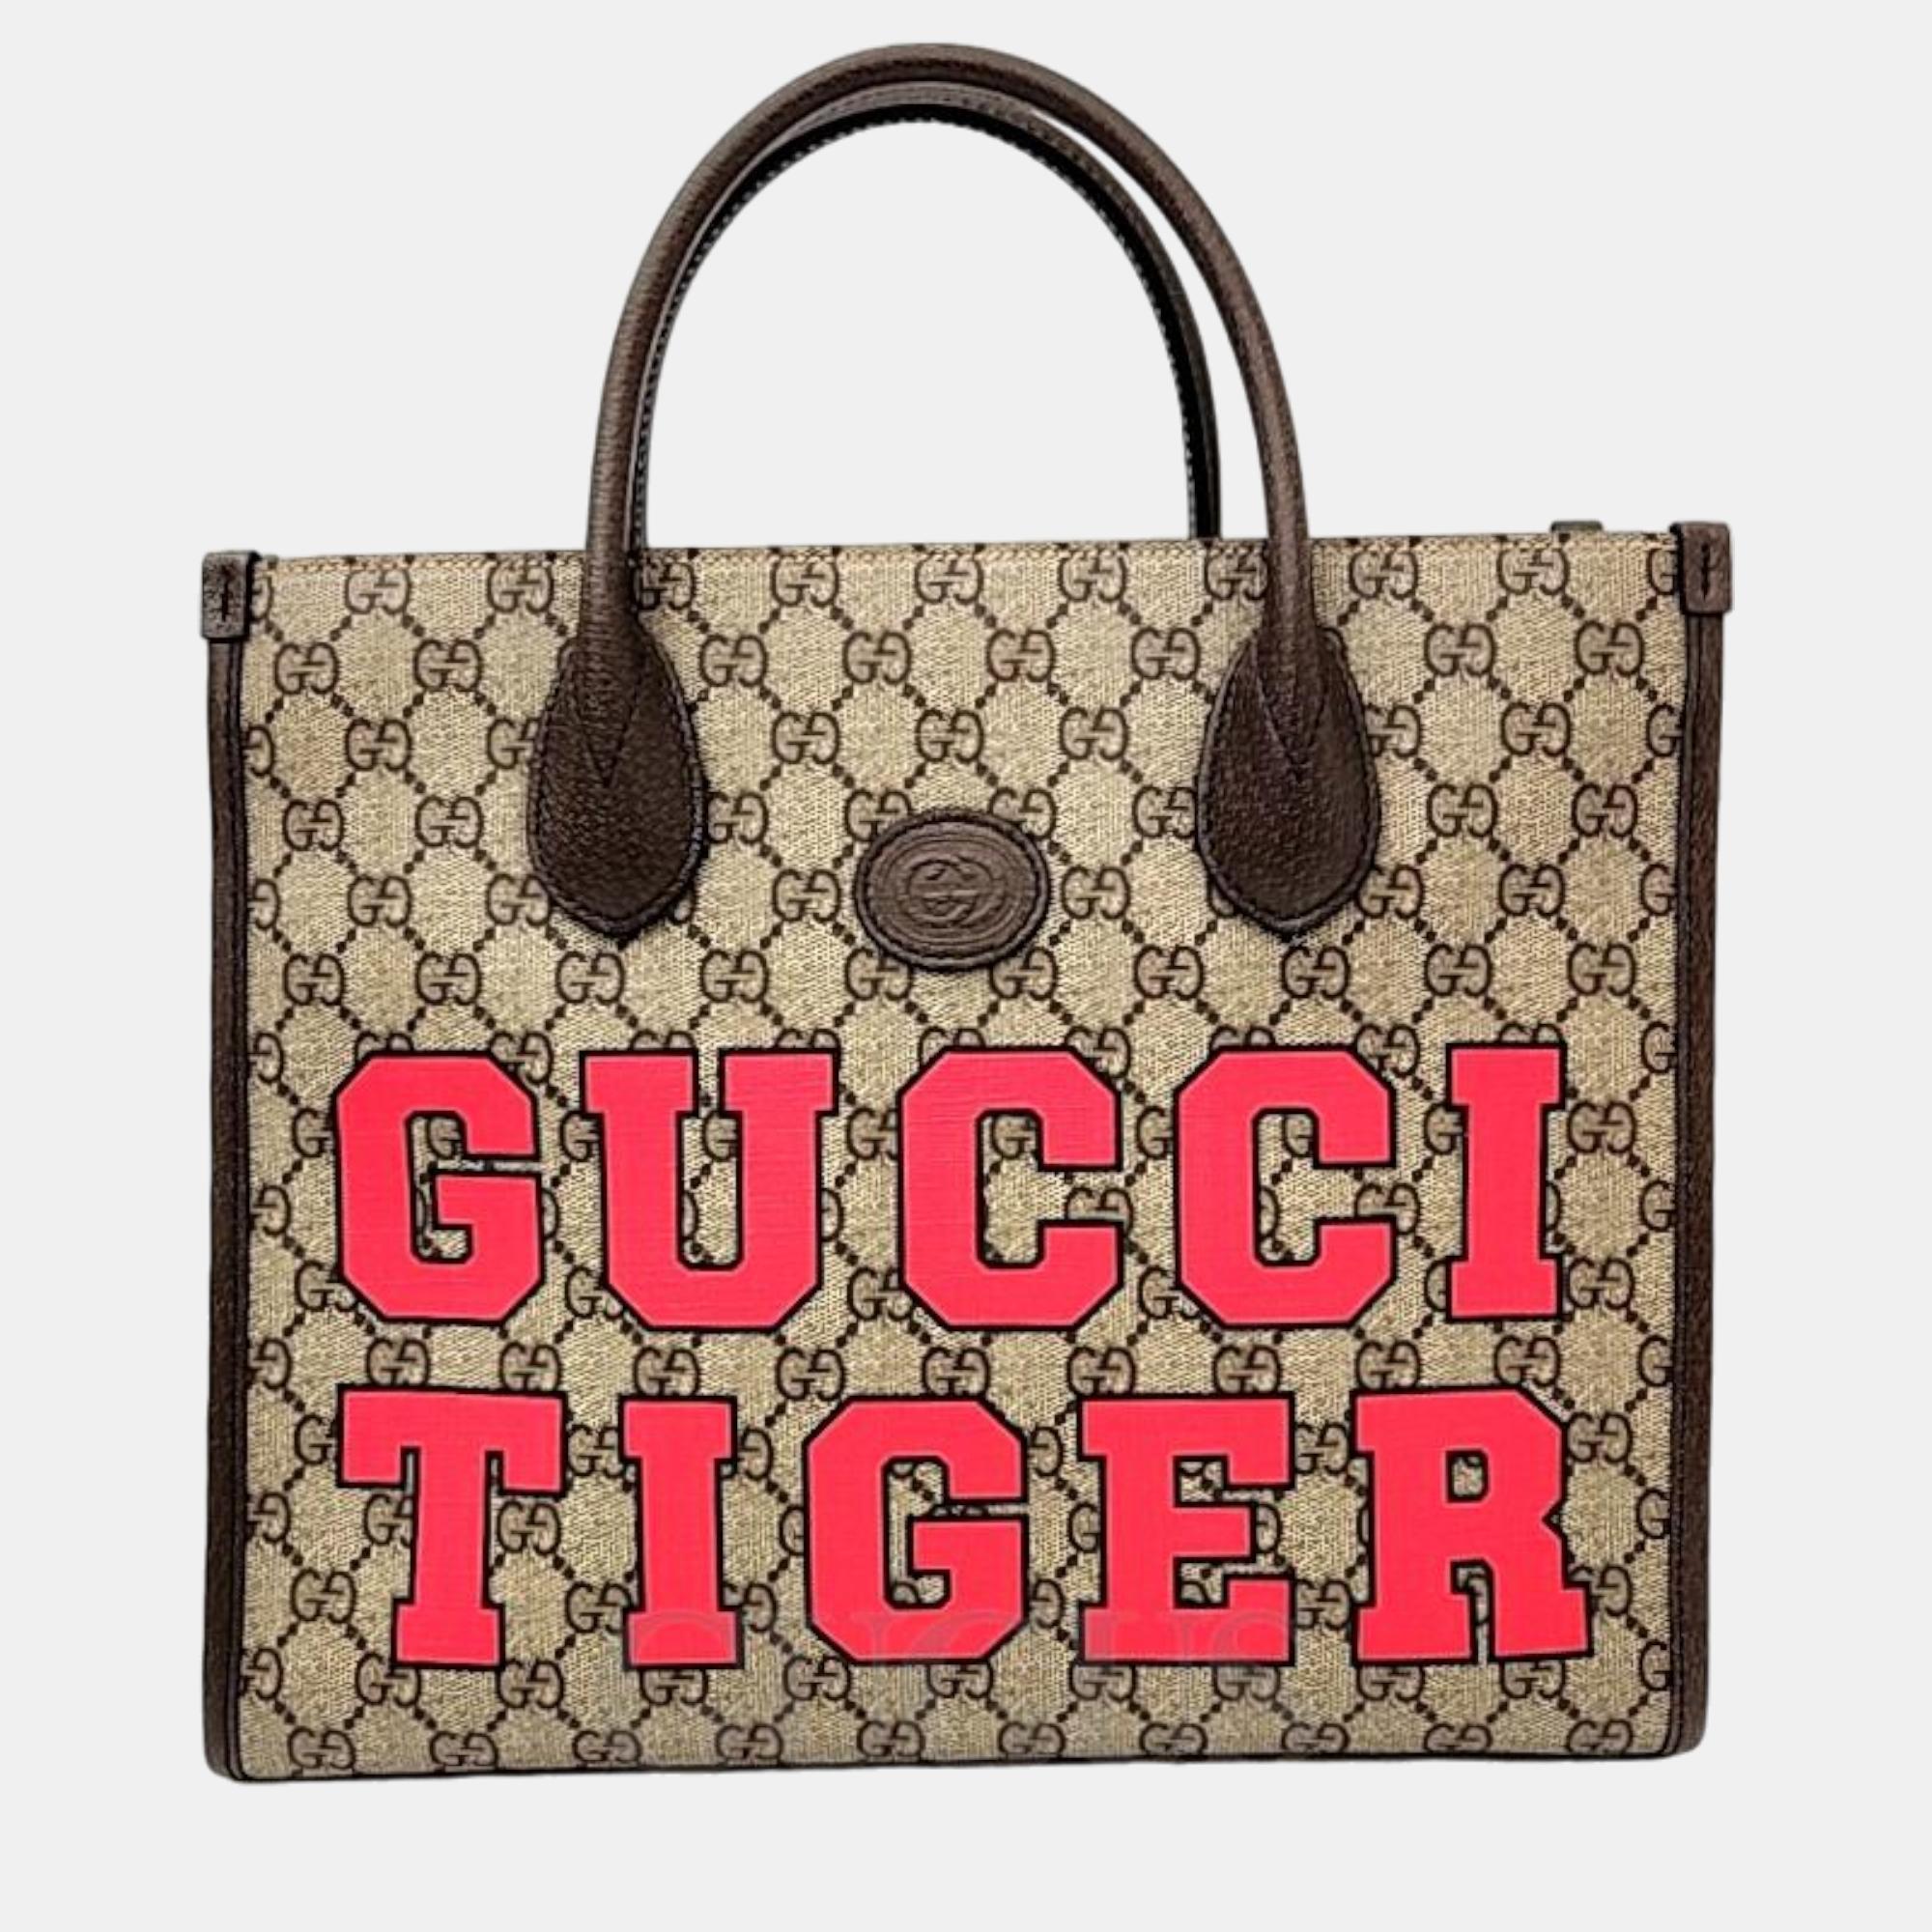 Gucci tiger gg small tote bag (659983)